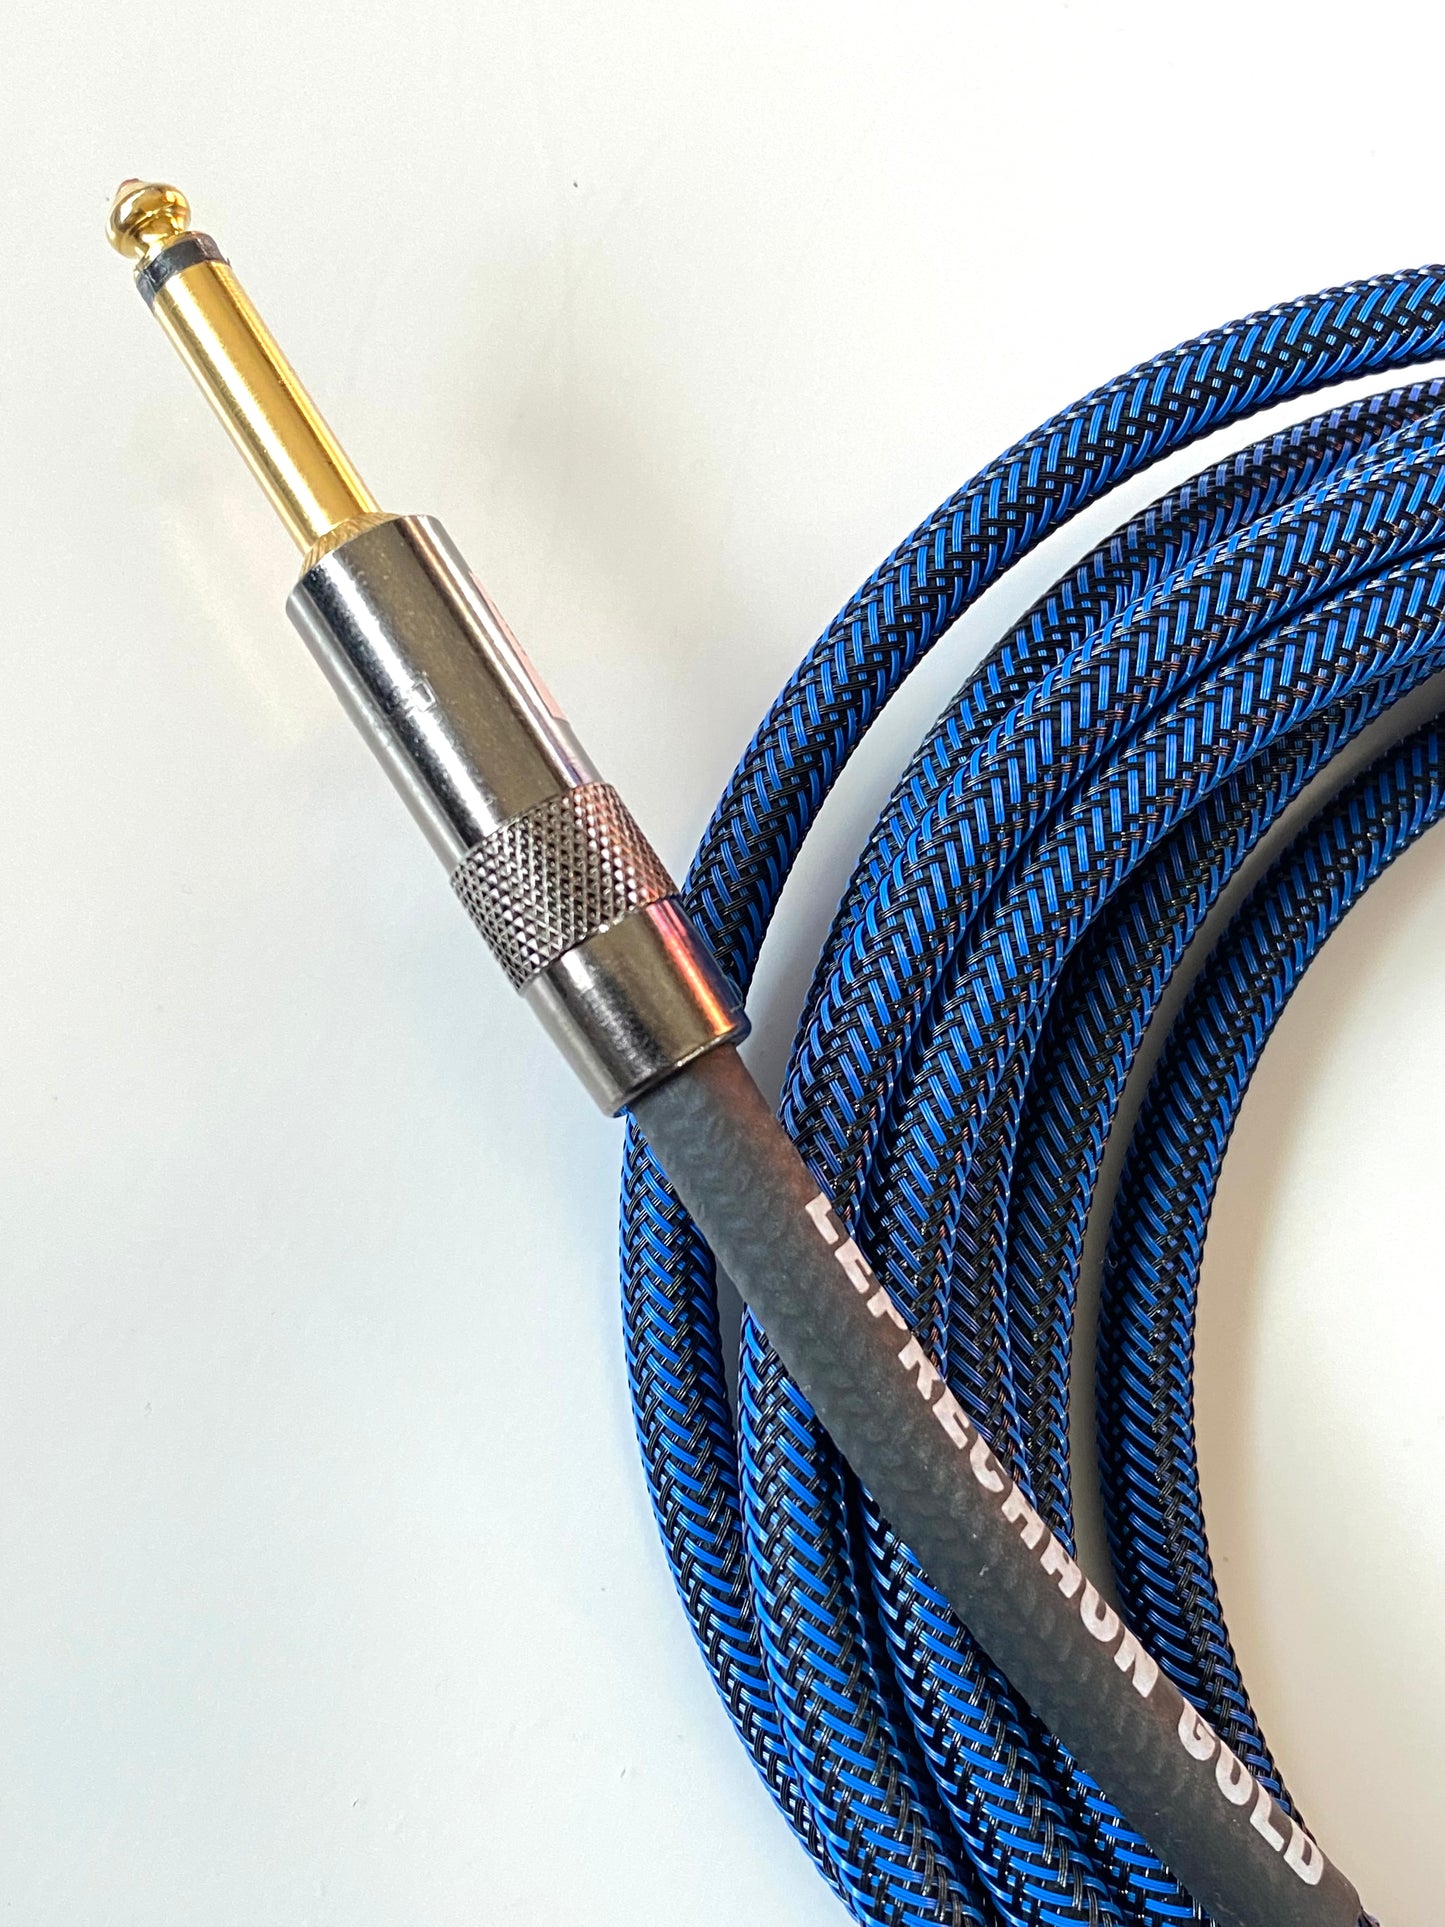 Leprechaun Gold Instrument Cable (Blue)